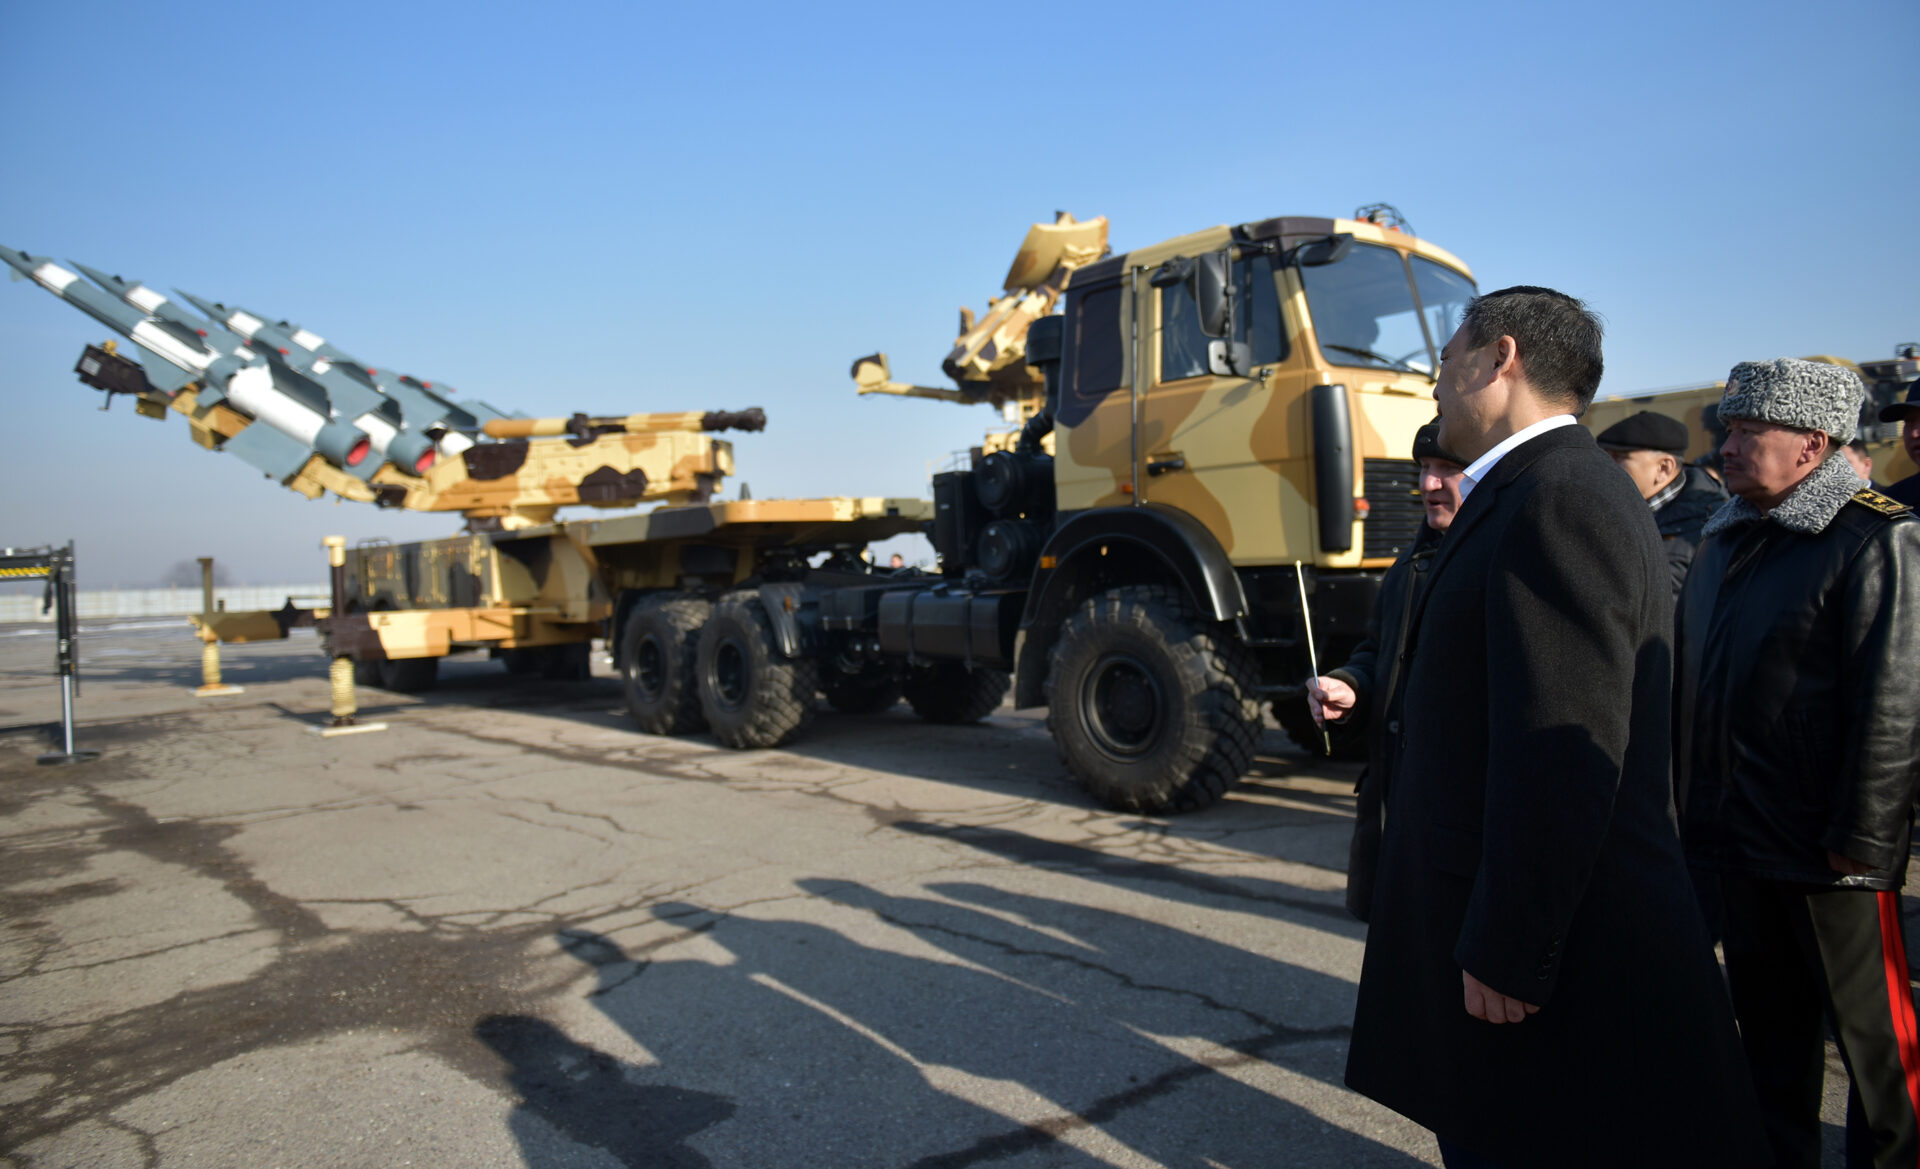 4 У Кыргызстана теперь есть зенитно-ракетный комплекс «Печора-2 БМ" - фото